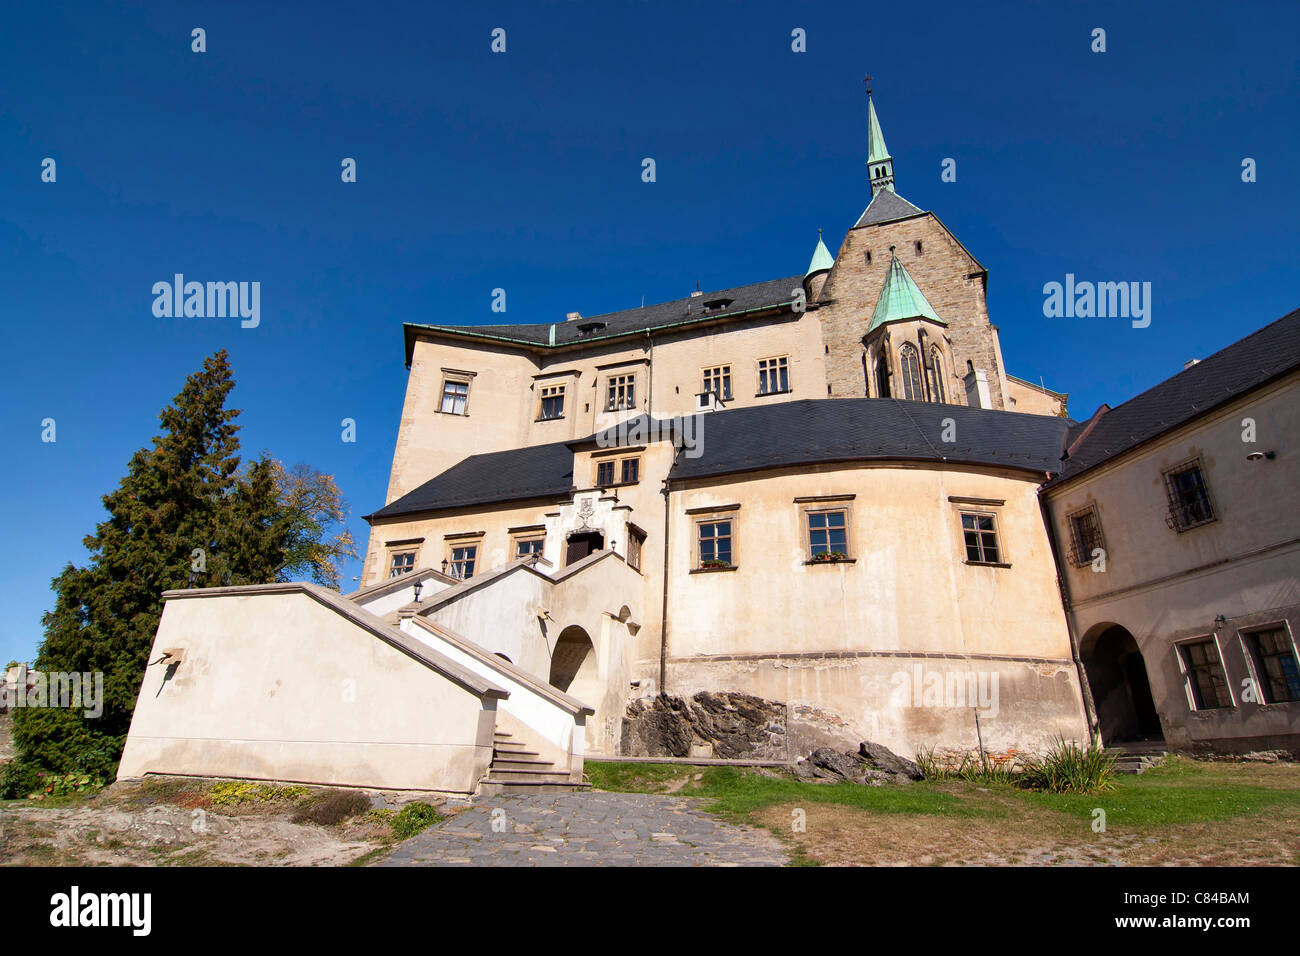 Sternberk Castle - national historic landmark Stock Photo